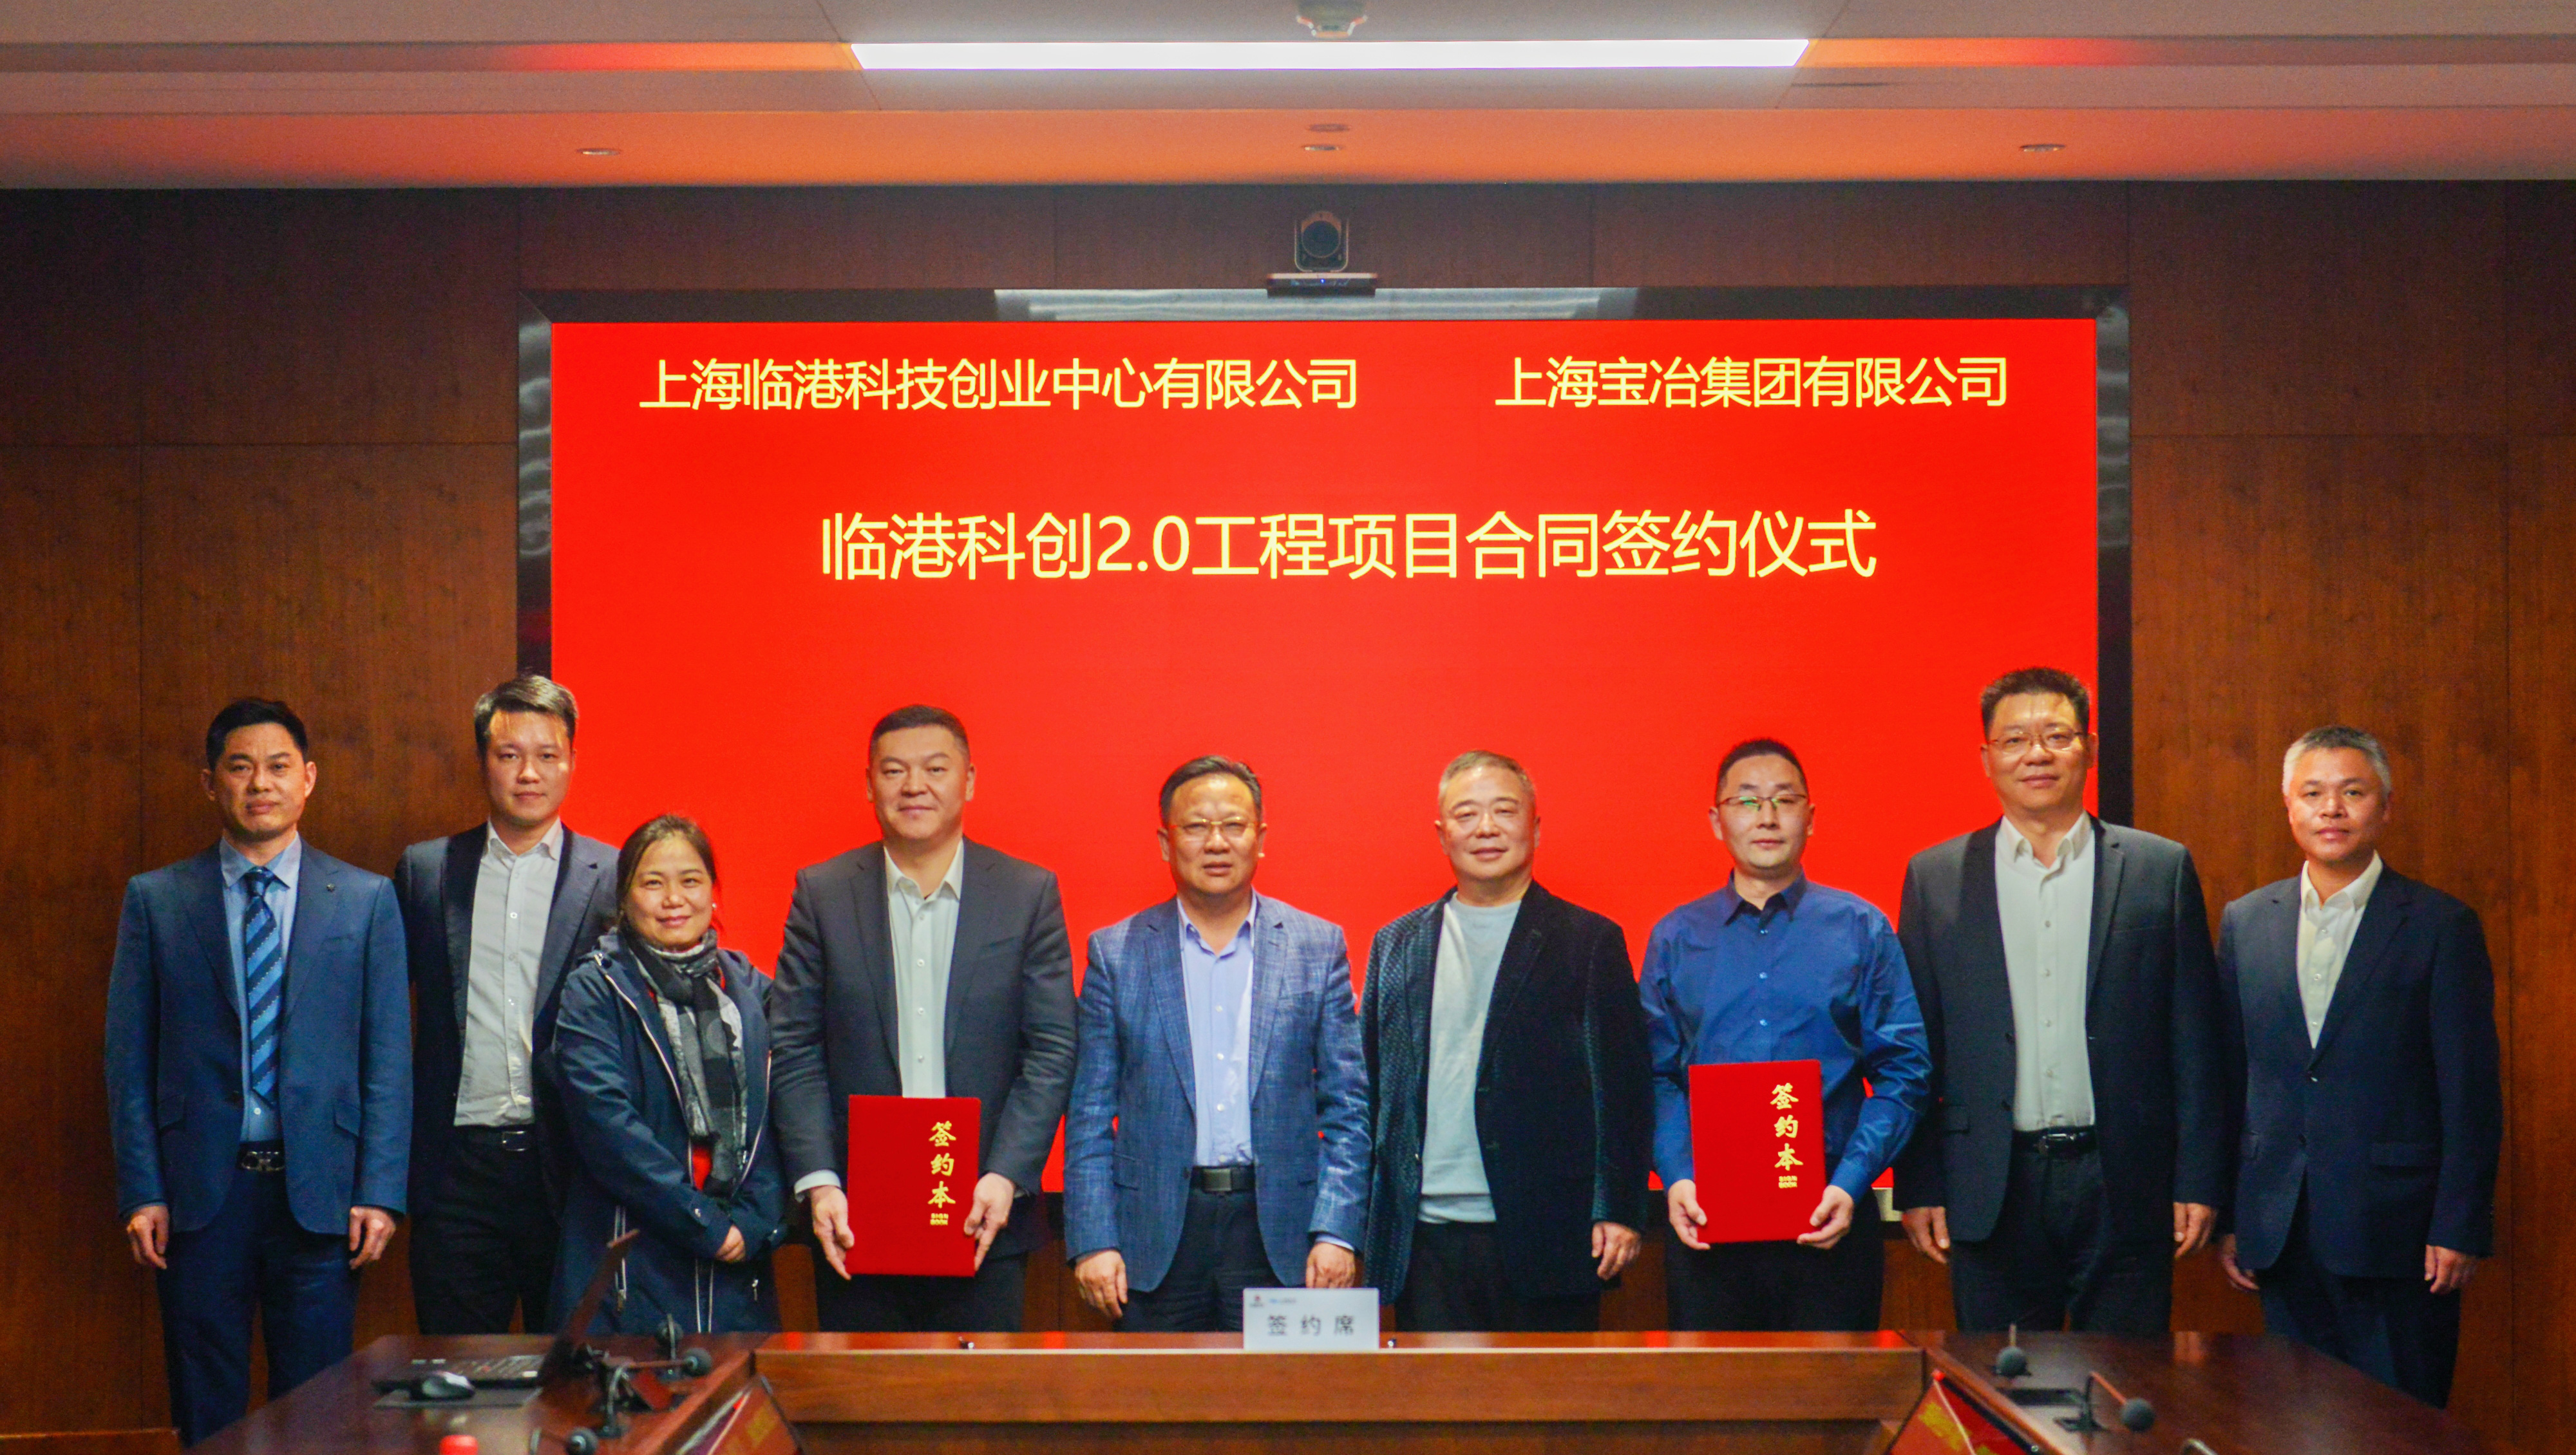 上海yd2333云顶电子游戏与上海临港科技创业中心举行项目签约仪式